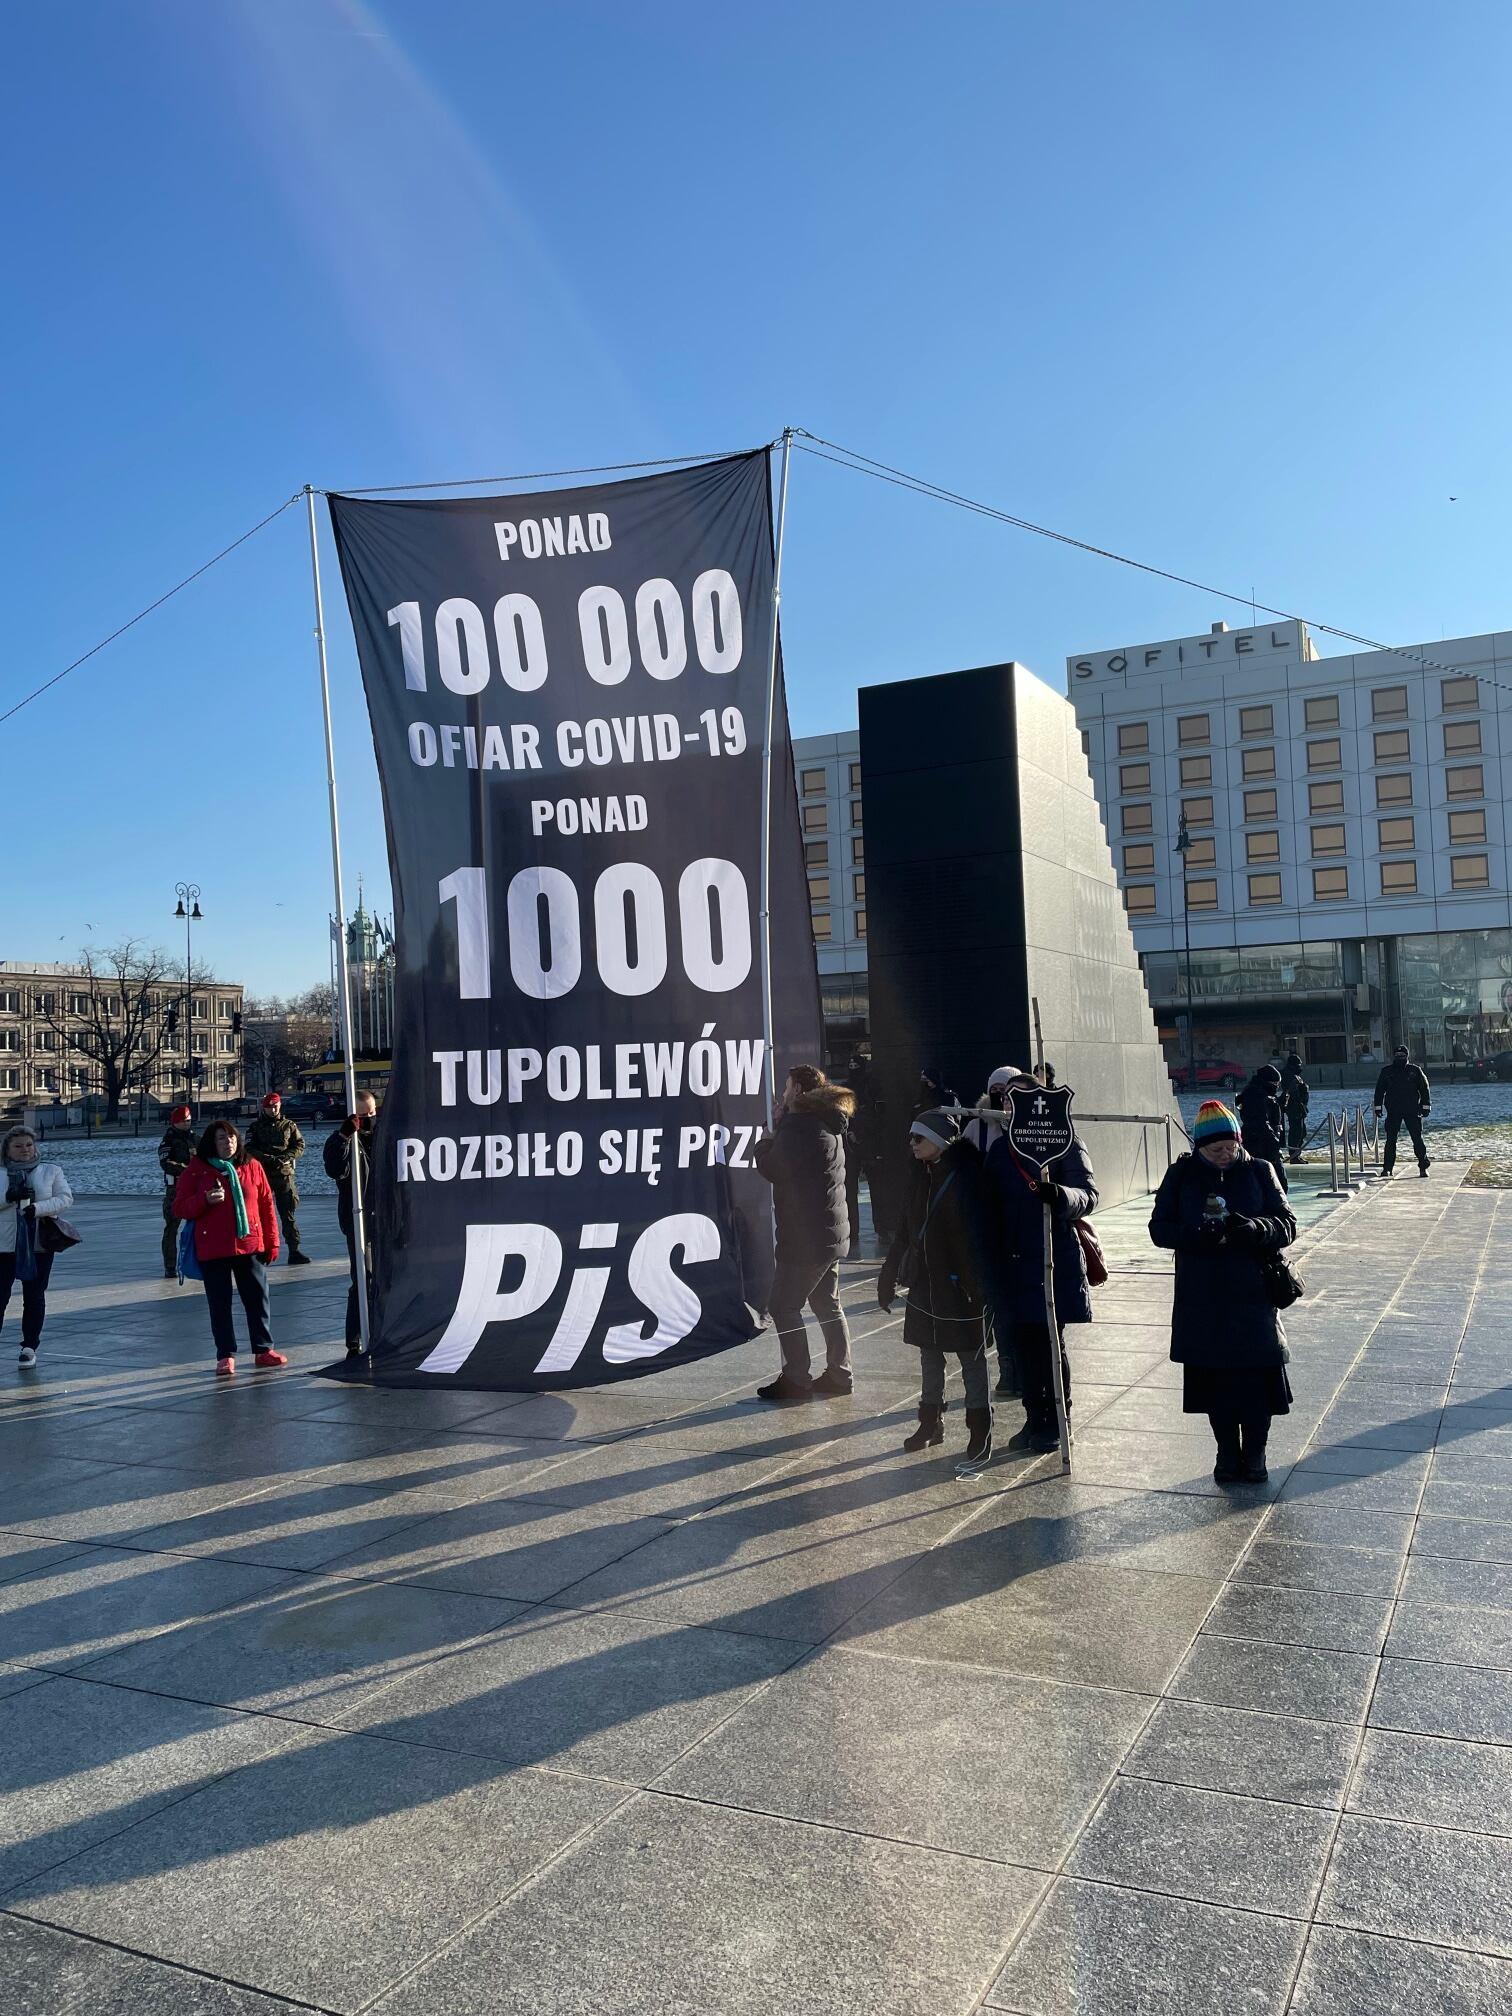 Transparent z napisem "Ponad 100000 ofiar Covid-19, ponad 1000 tupolewów rozbło sie przez PiS" przed pomnikiem smoleńskim w Warszawie